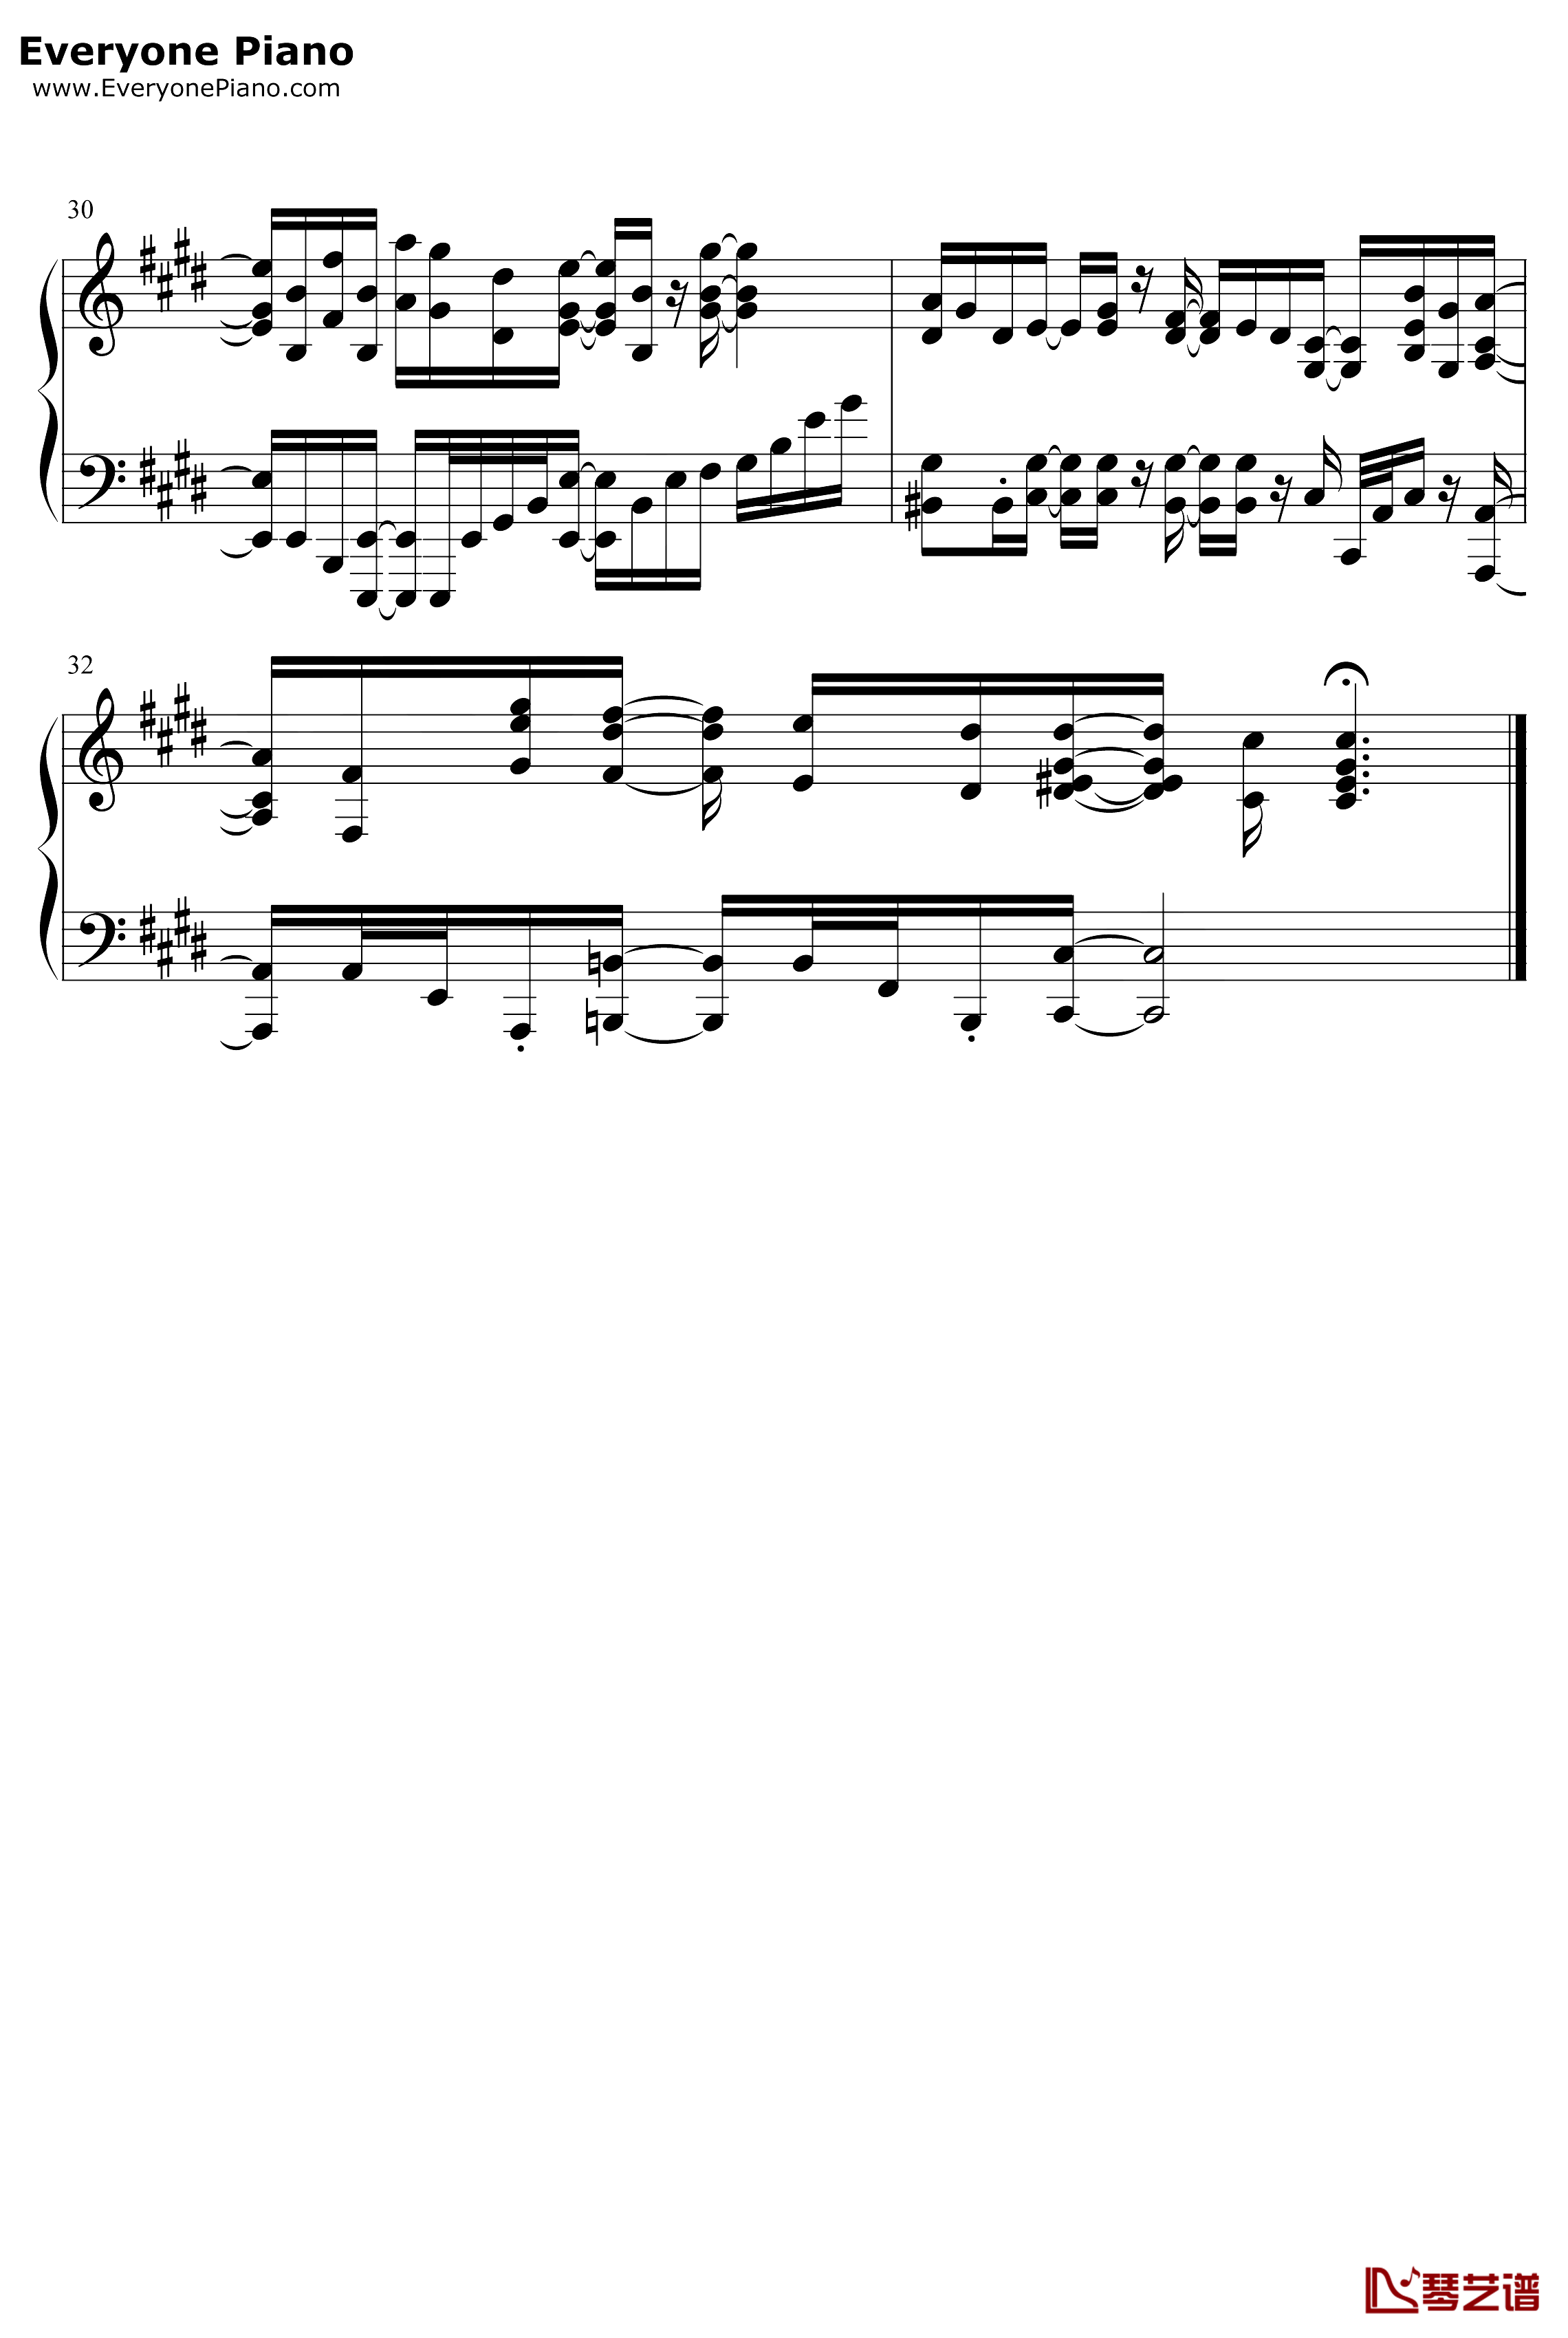 キヅアト钢琴谱-センチミリメンタル-GIVENOP4